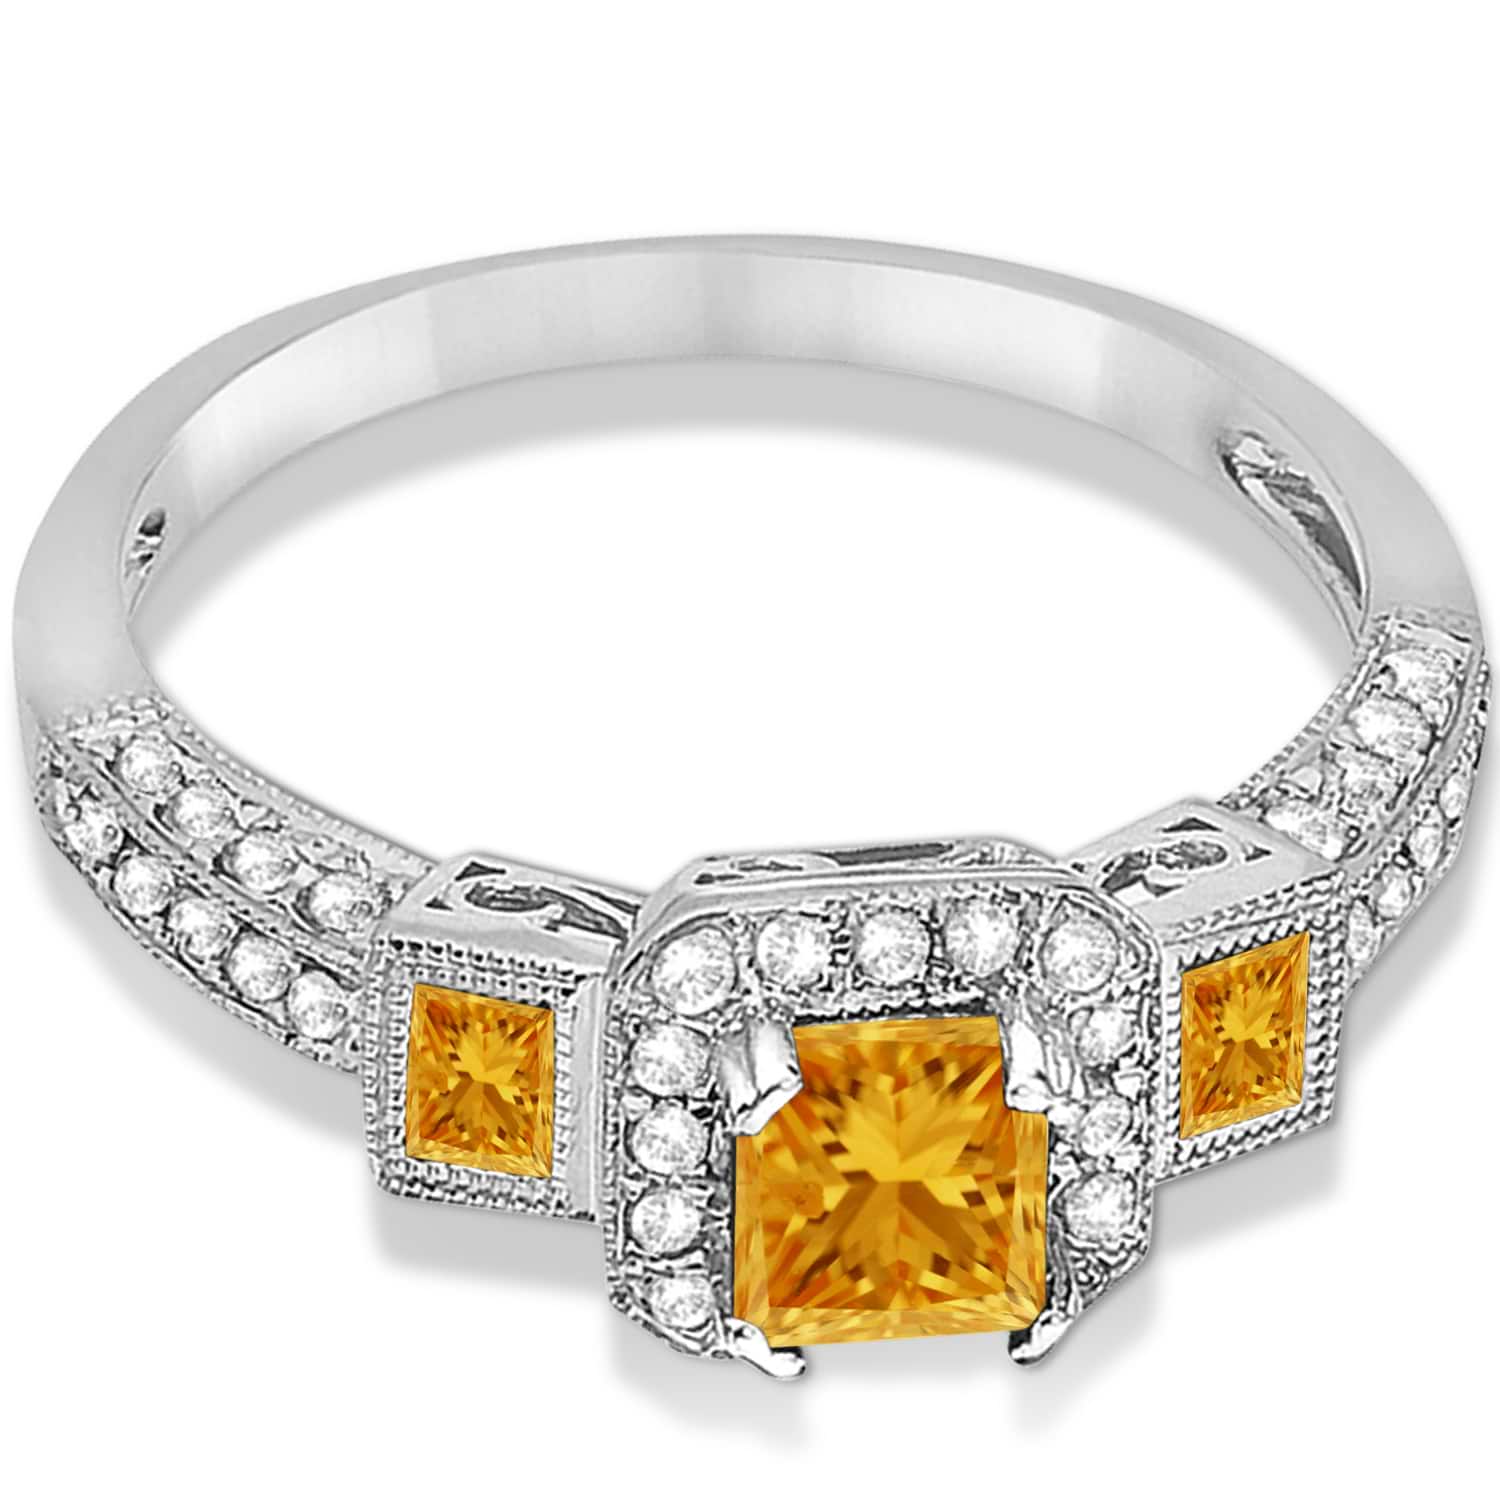 Citrine & Diamond Engagement Ring 14k White Gold (1.35ctw)